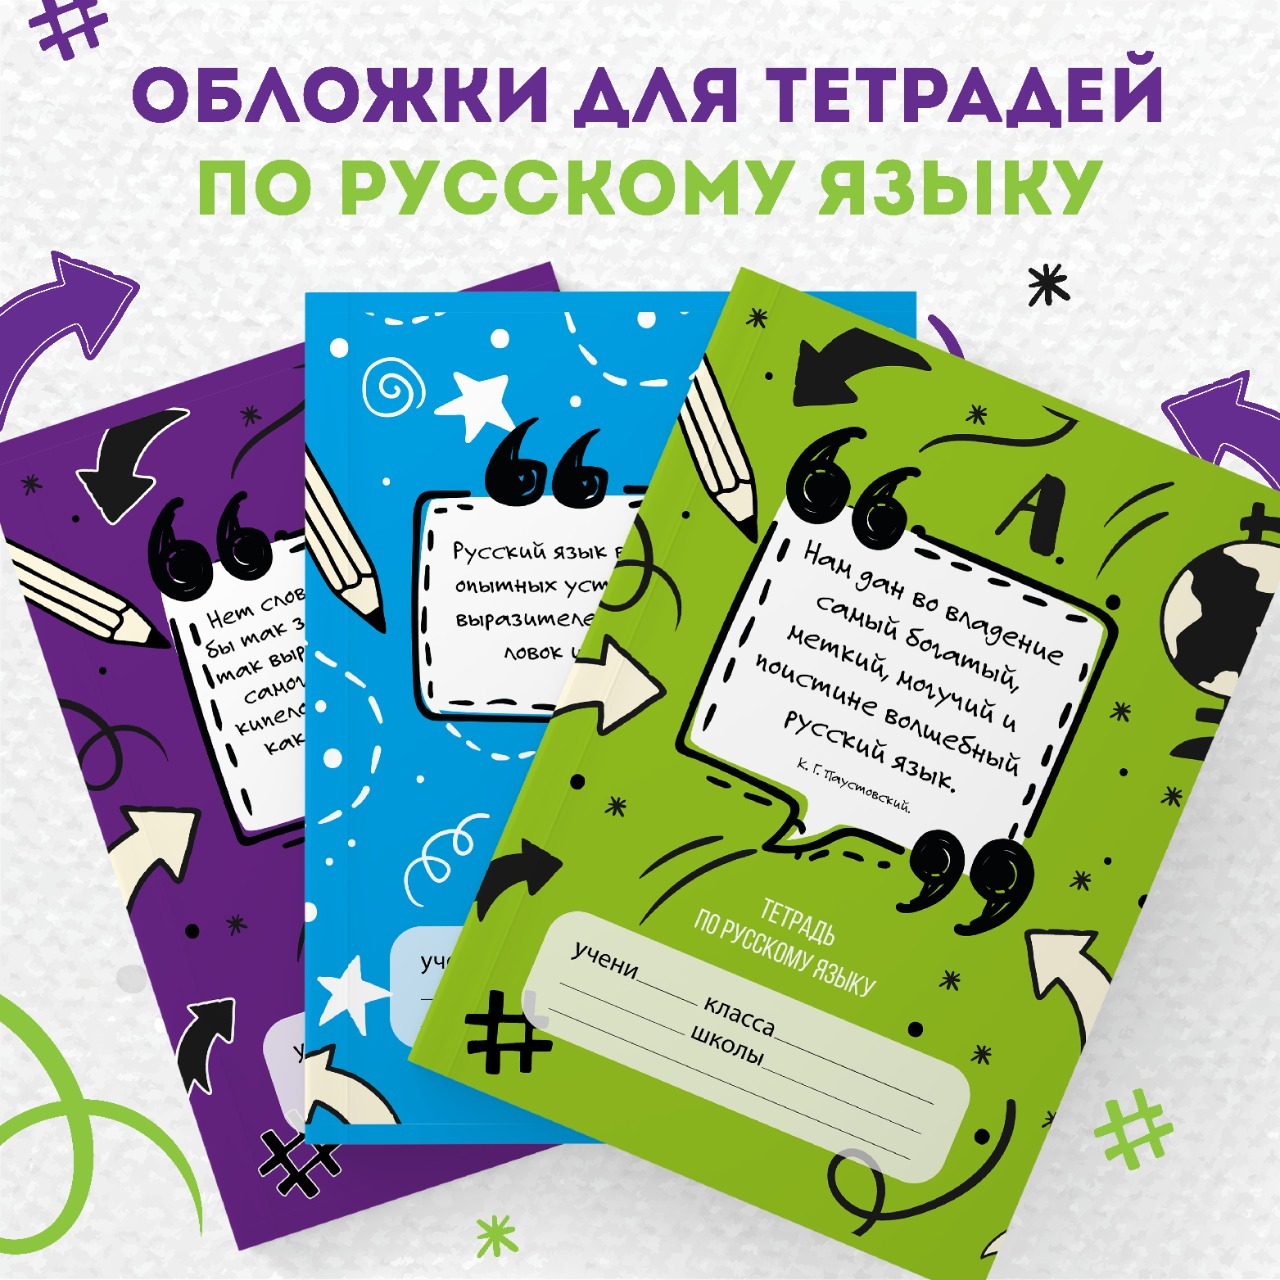 Ежедневник «Учителю русского языка», твёрдая обложка, А6, 80 листов